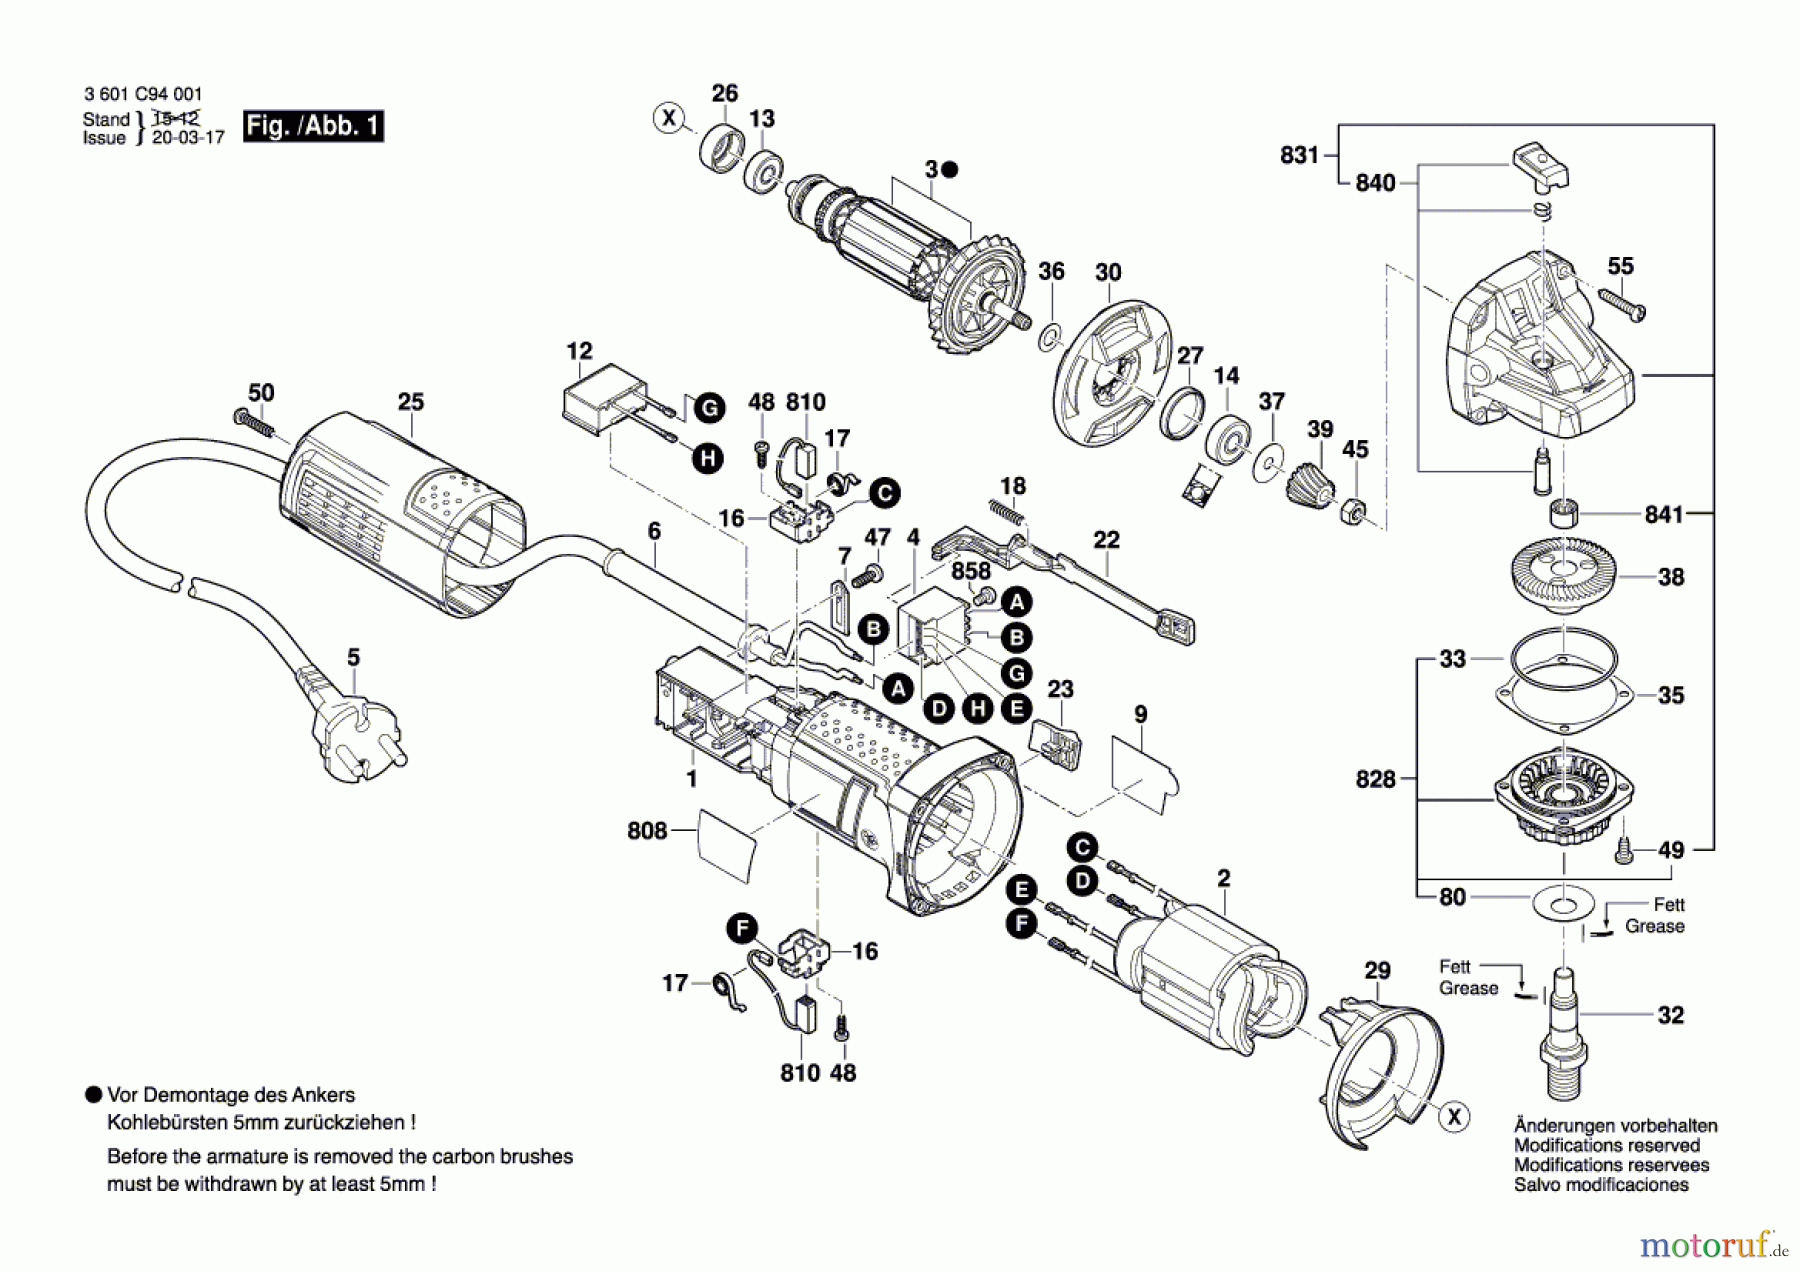  Bosch Werkzeug Winkelschleifer GWS 700 Seite 1